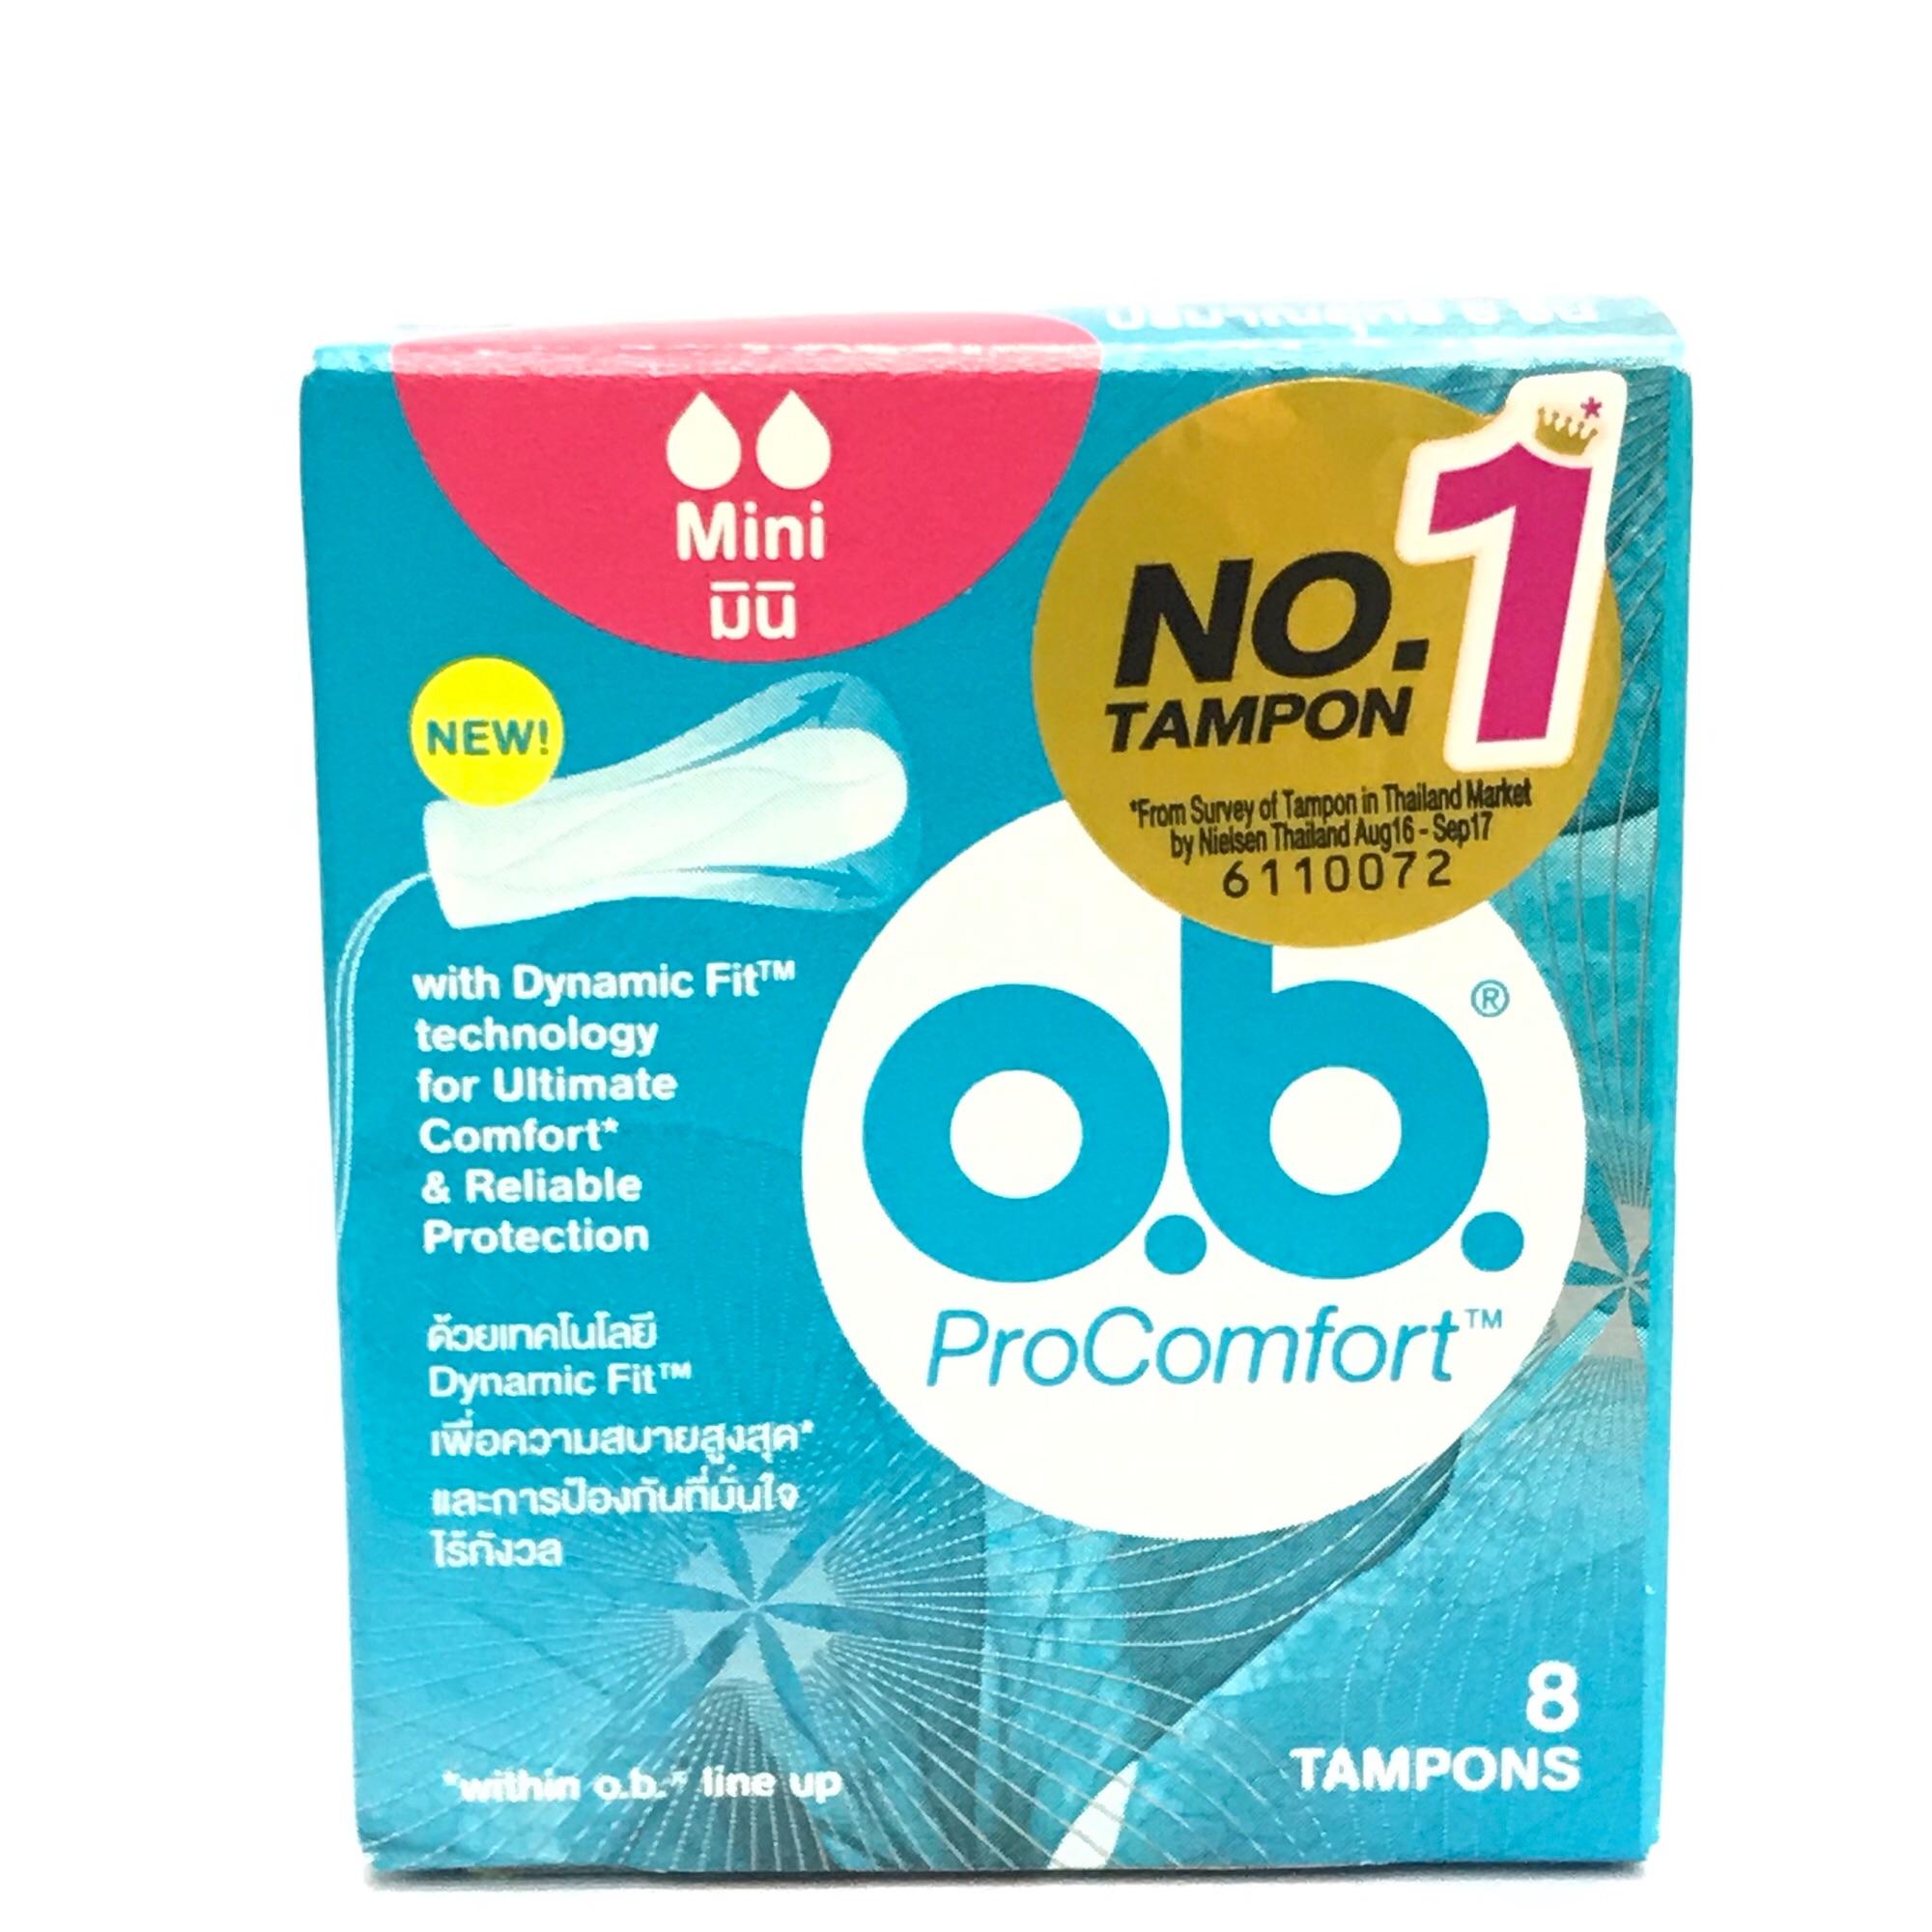 O.B. ProComfort tampons โอบี ผ้าอนามัยแบบสอด ขนาดเล็ก 1 กล่องมี 8 ชิ้น